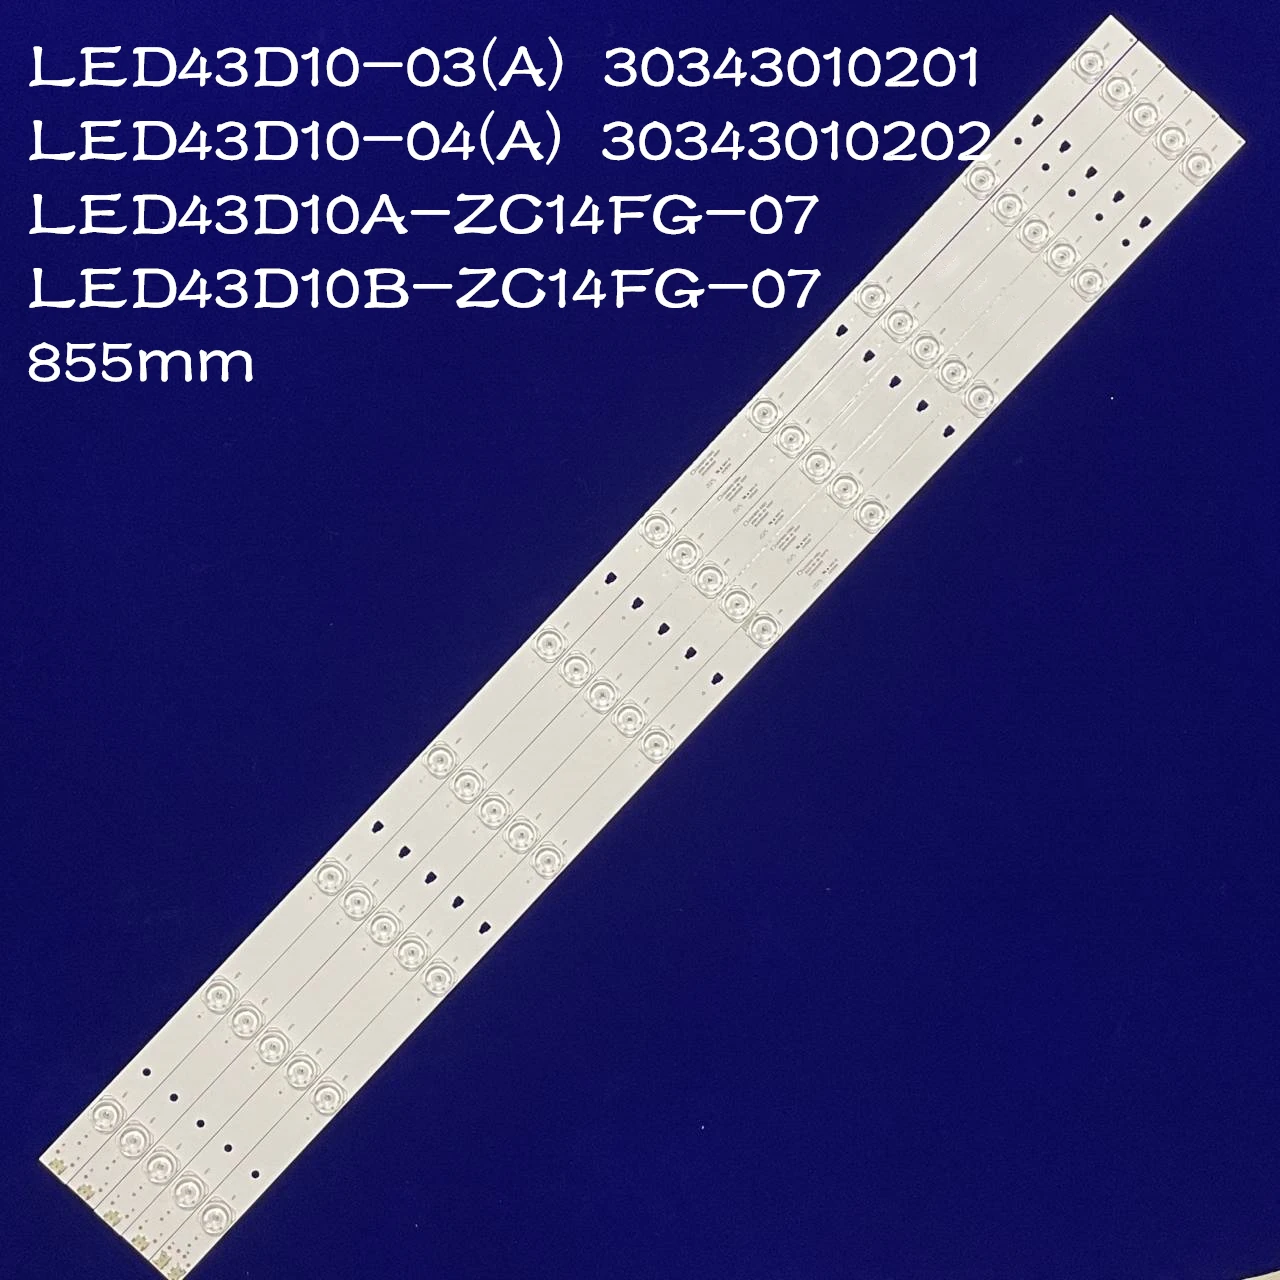 

5PCS LED backlight Strip for 43“ TV FD4351A-LU LED43D10-03А LED43D10-03B X 30343010202/01 LED43D10A LED43D10B-ZC14FG-07